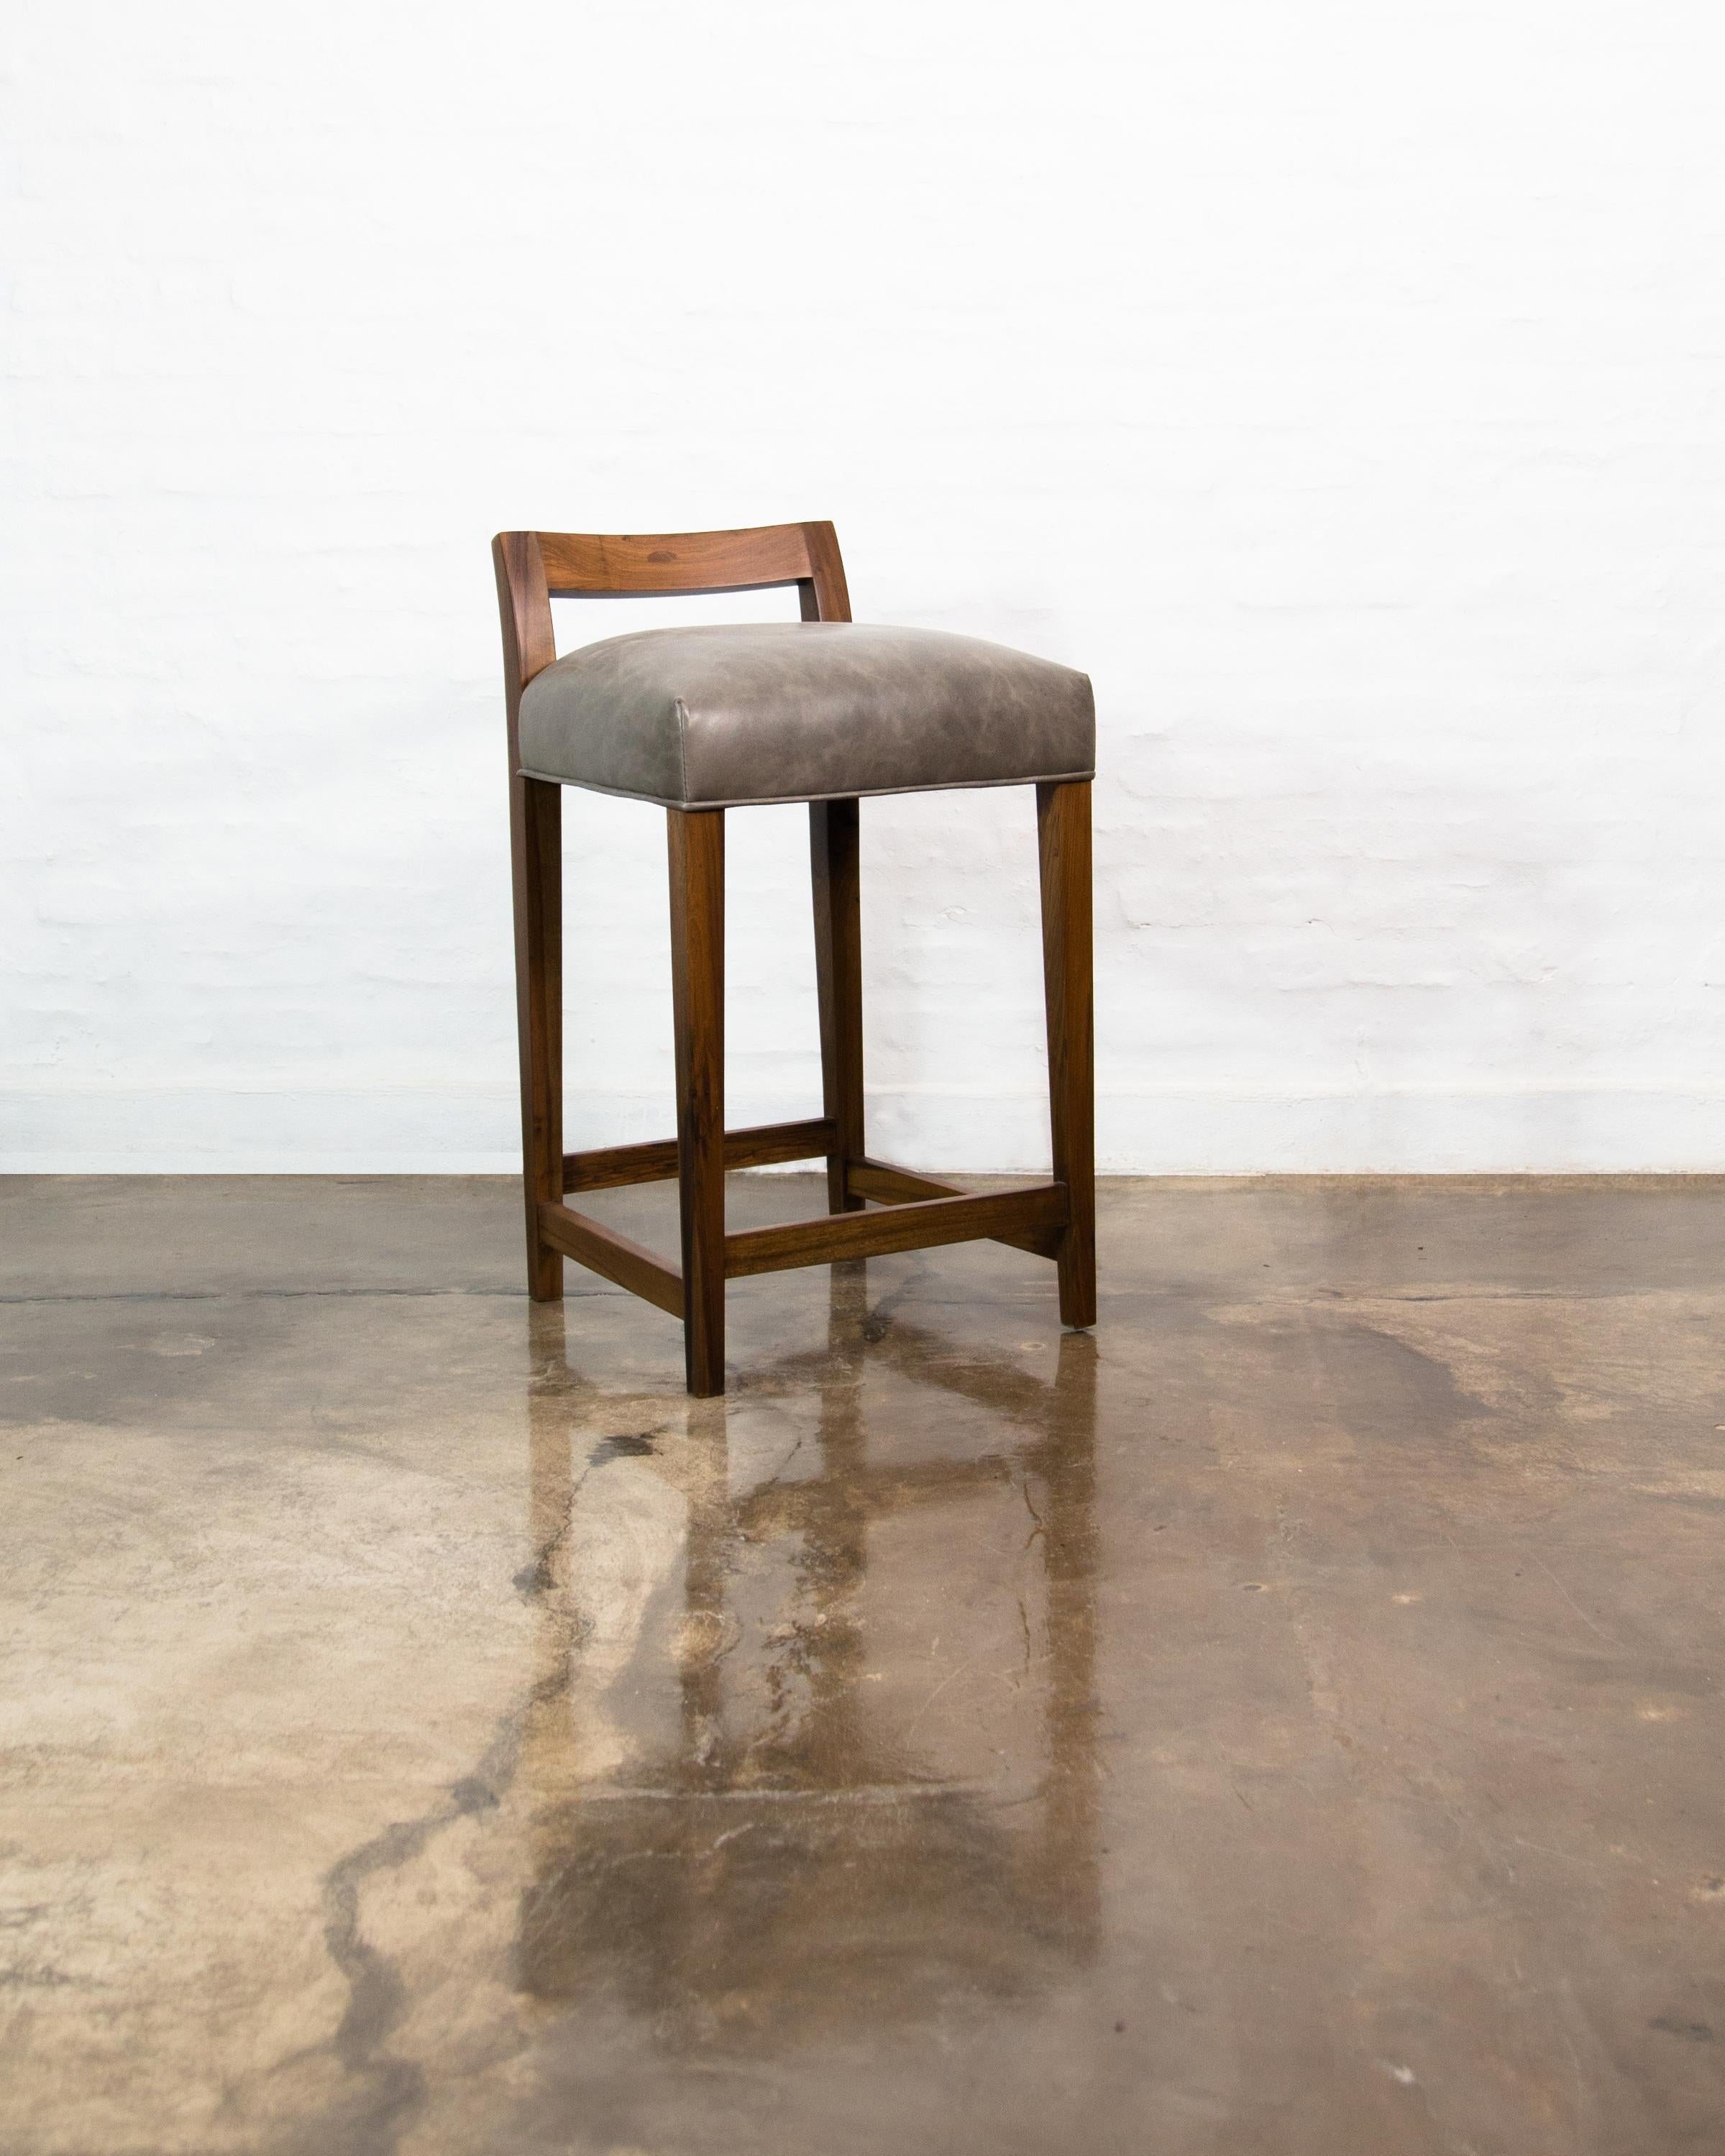 Der Thekenhocker Umberto gehört zu den originellen Sitzmöbeln von Costantini. Er zeichnet sich durch eine moderne, niedrige, geschnitzte Massivholzlehne mit festem Sitz und einer optionalen Fußstütze aus brünierter Bronze aus. Erhältlich in